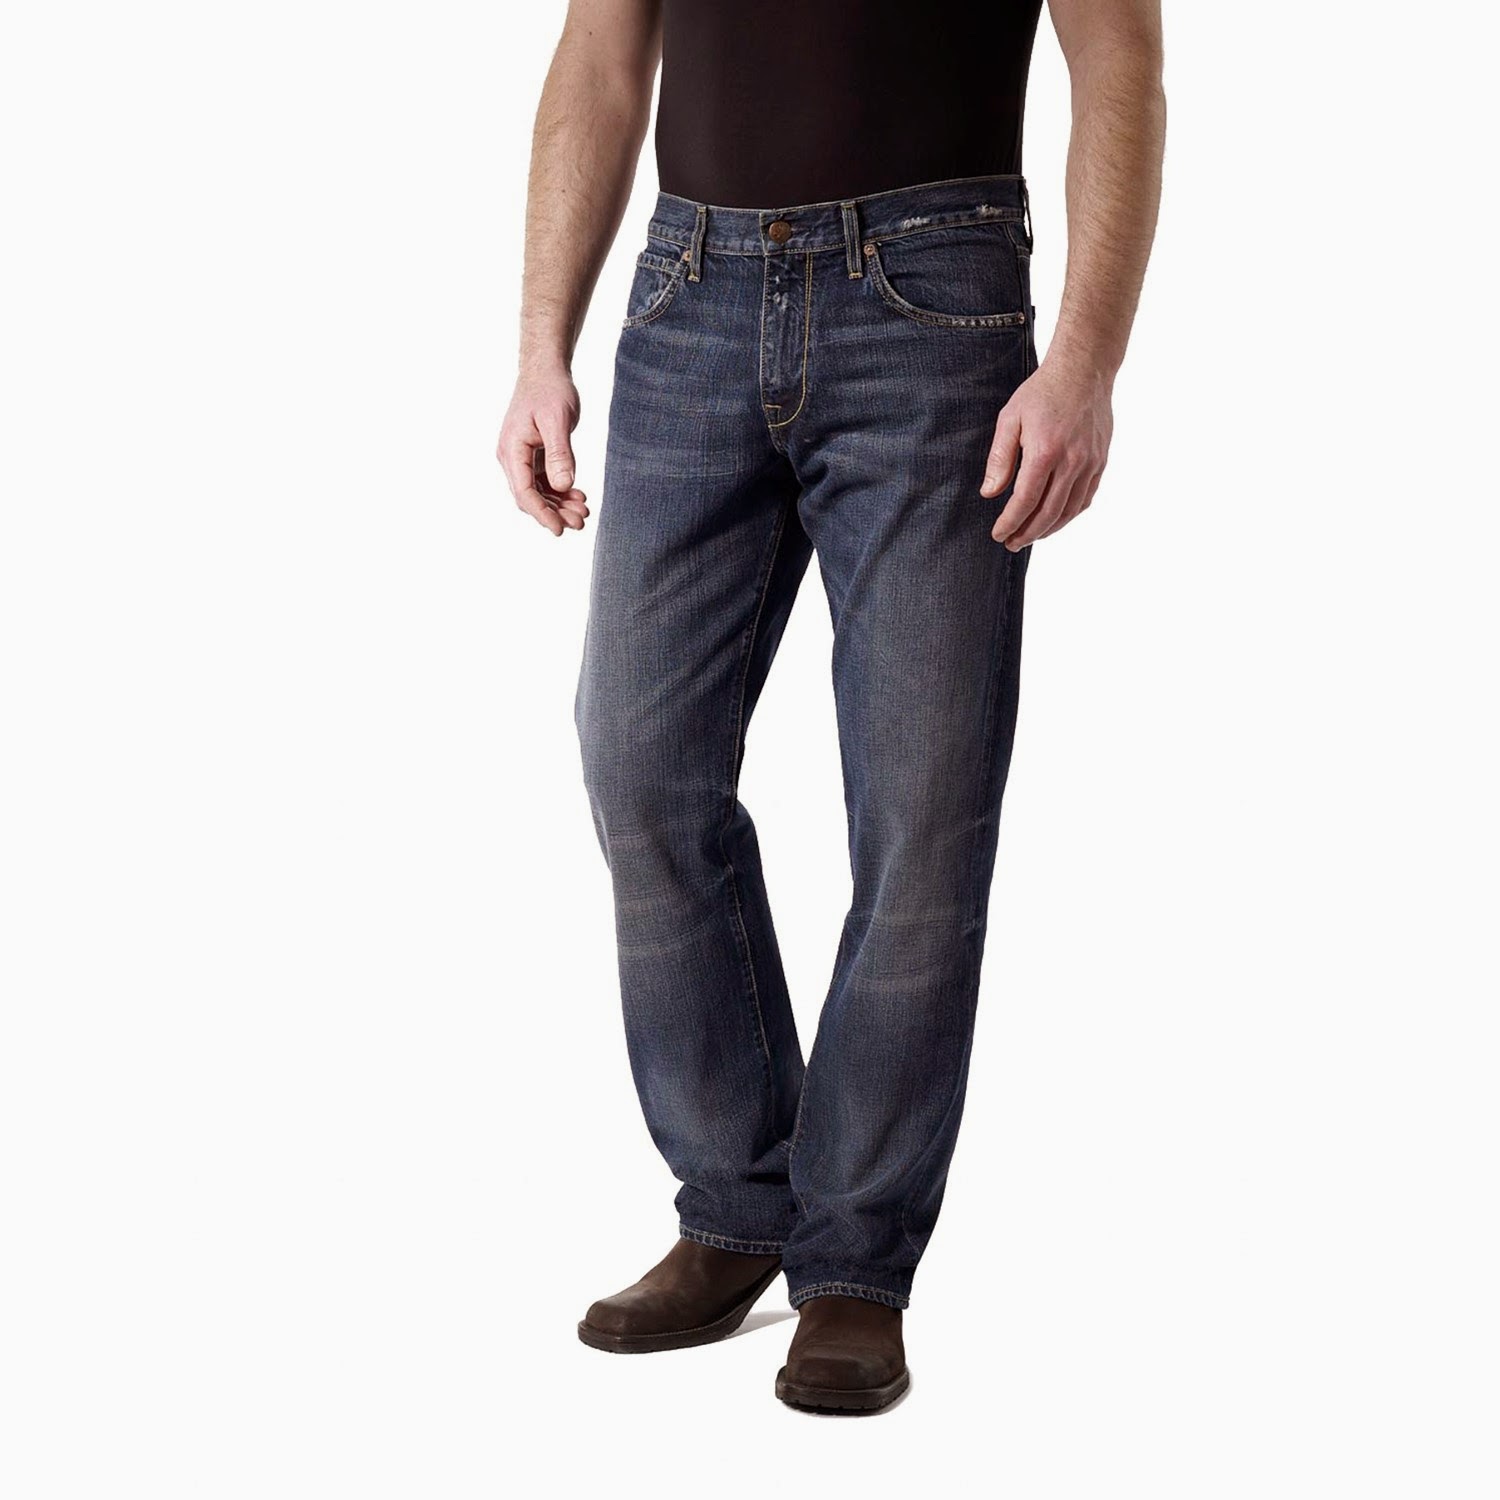 4 Jenis Celana  Jeans  Pria Mana Yang Cocok Untuk Acara Resmi 